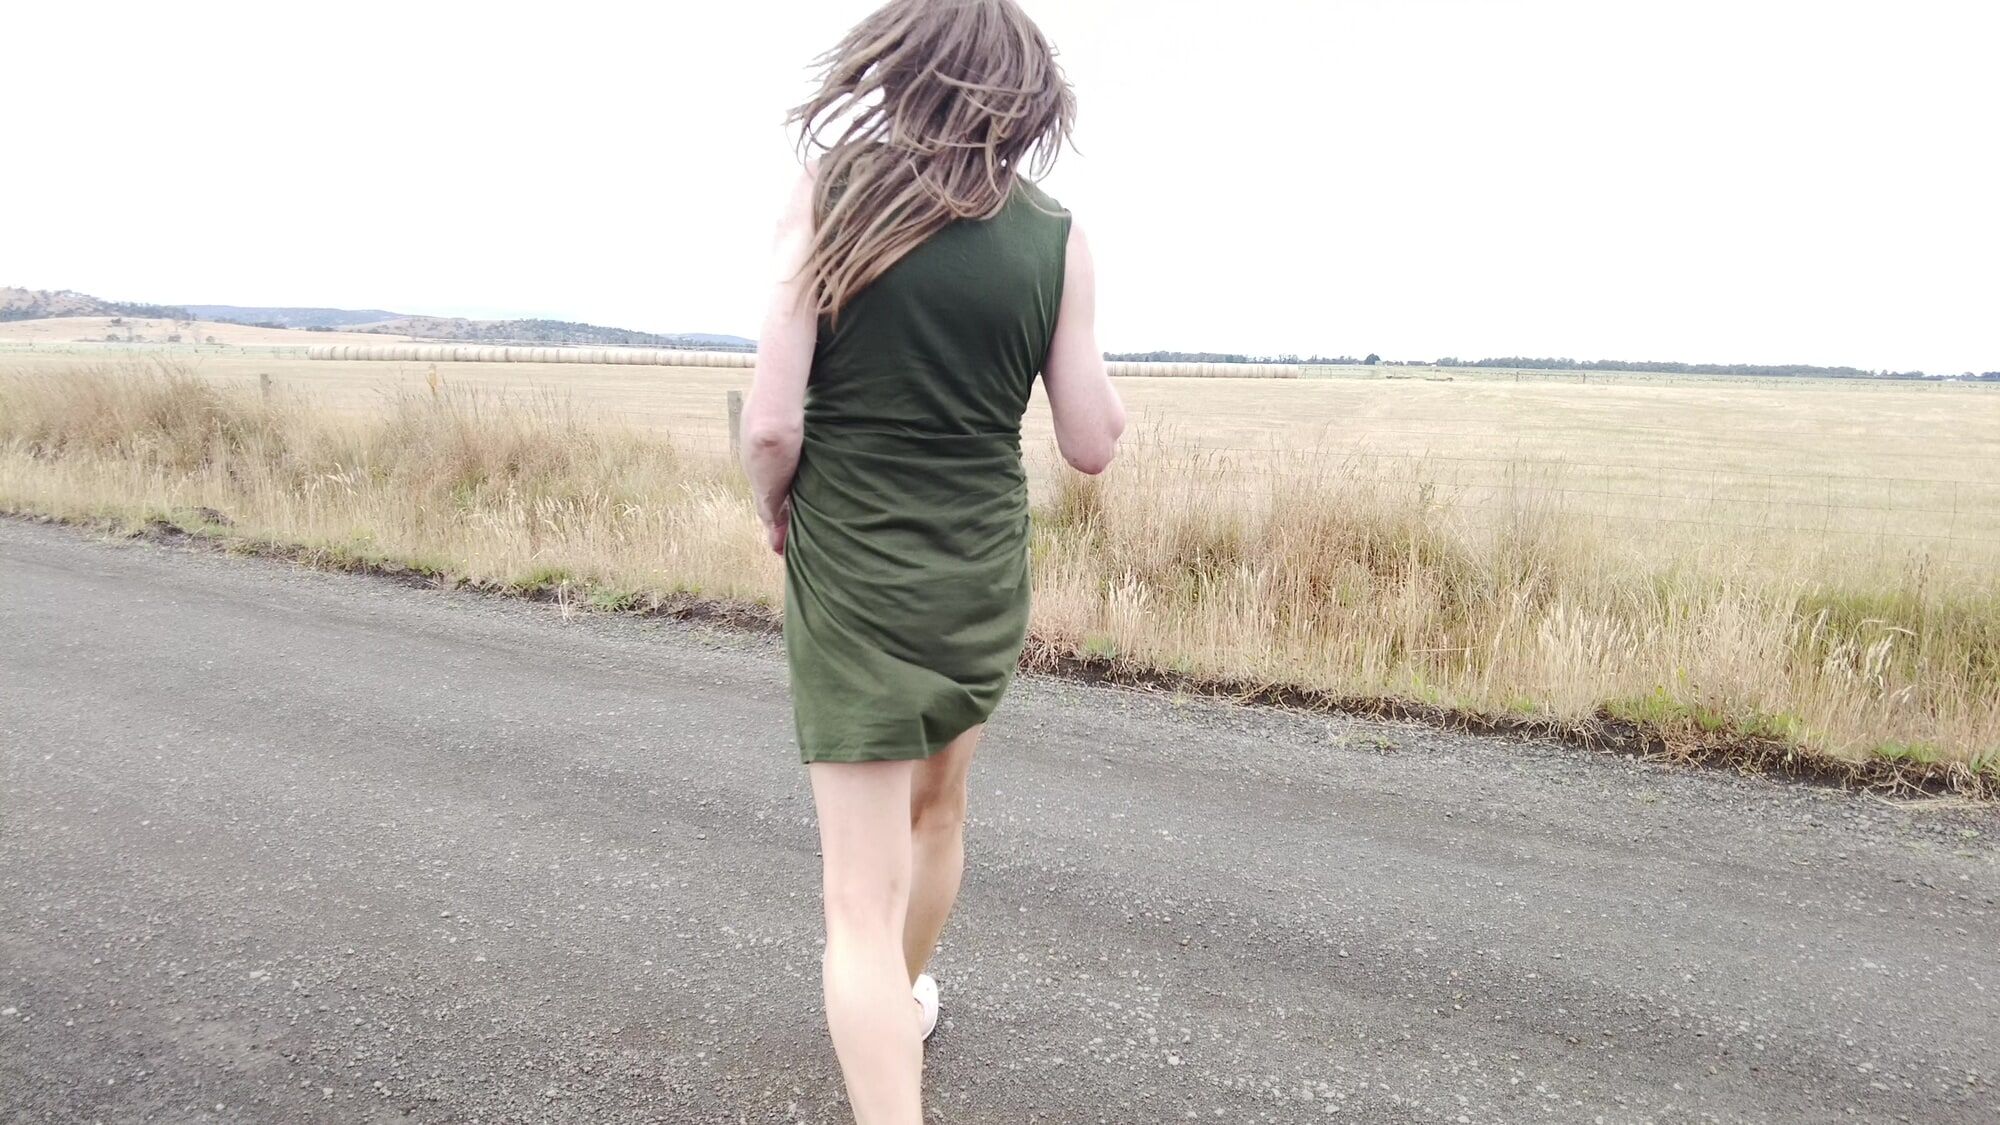 Crossdress - Roadtrip - Rural Drive - Green Dress #10